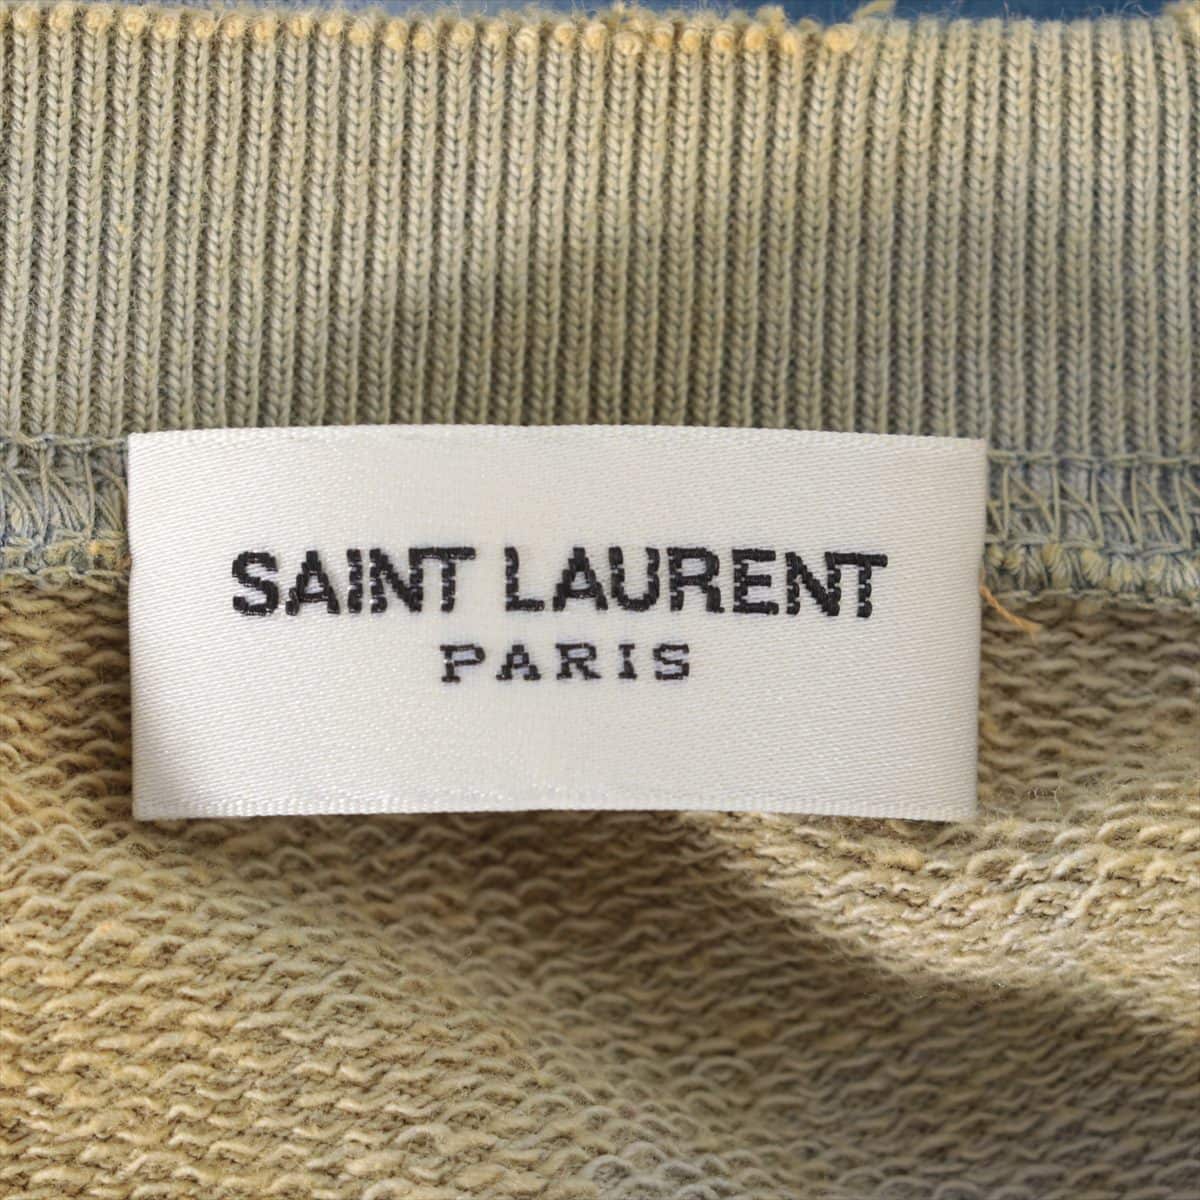 Saint Laurent Paris 15 years Cotton trainers M Men's Yellow × Blue  Destroy processing